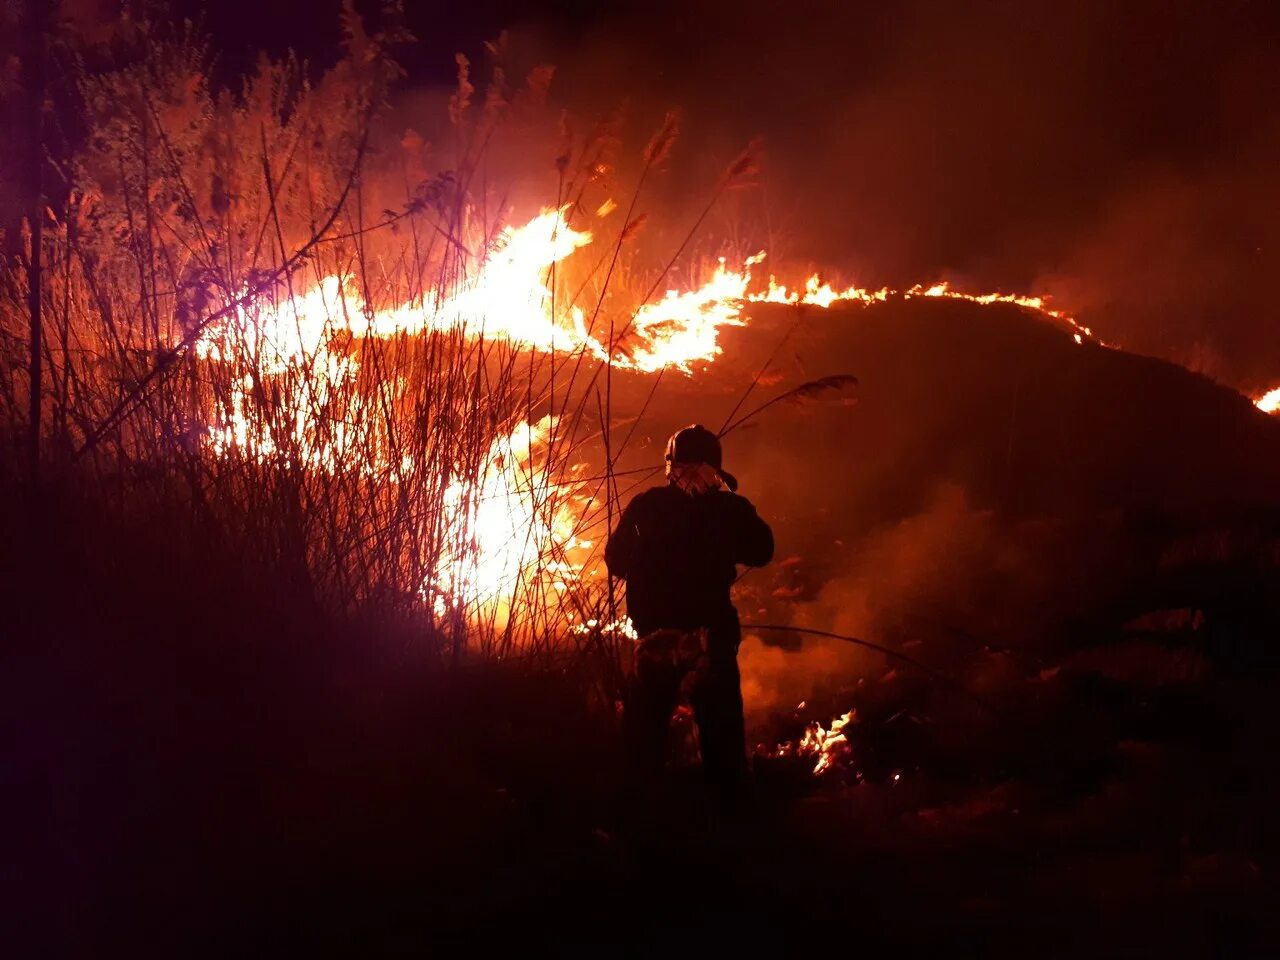 Горит место на фотосессию. Фото сгоревшей травы ночью. Трава горит Ульяновск. Красивые фото пожарных с огненными крыльями.